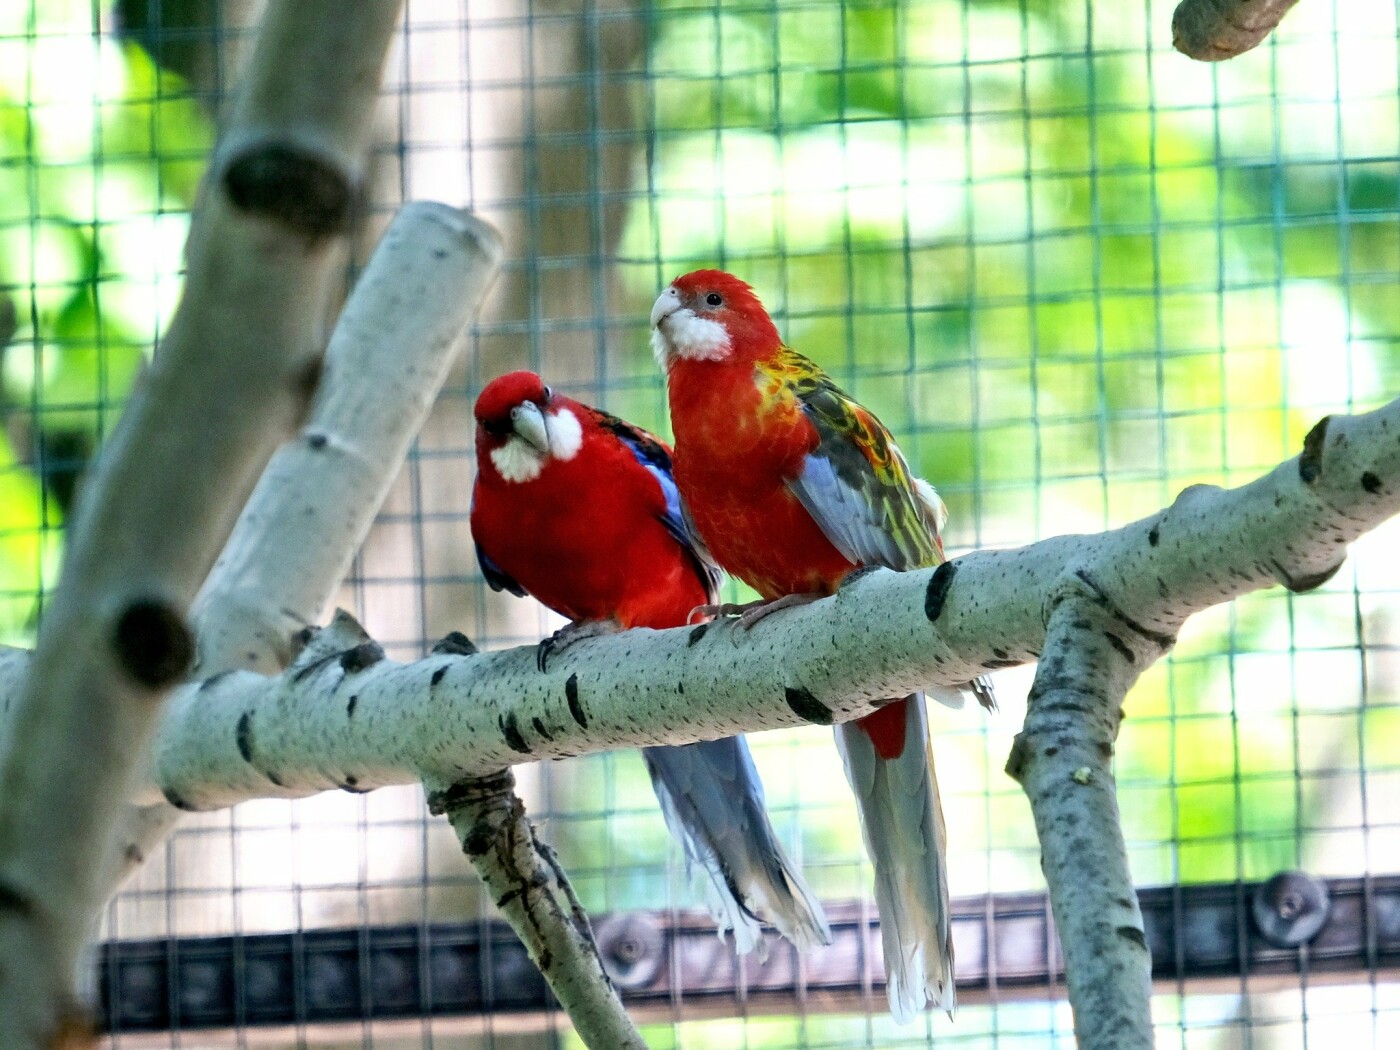 Здесь попугай Крамера и попугай индийский, розелла красная и розелла пестрая